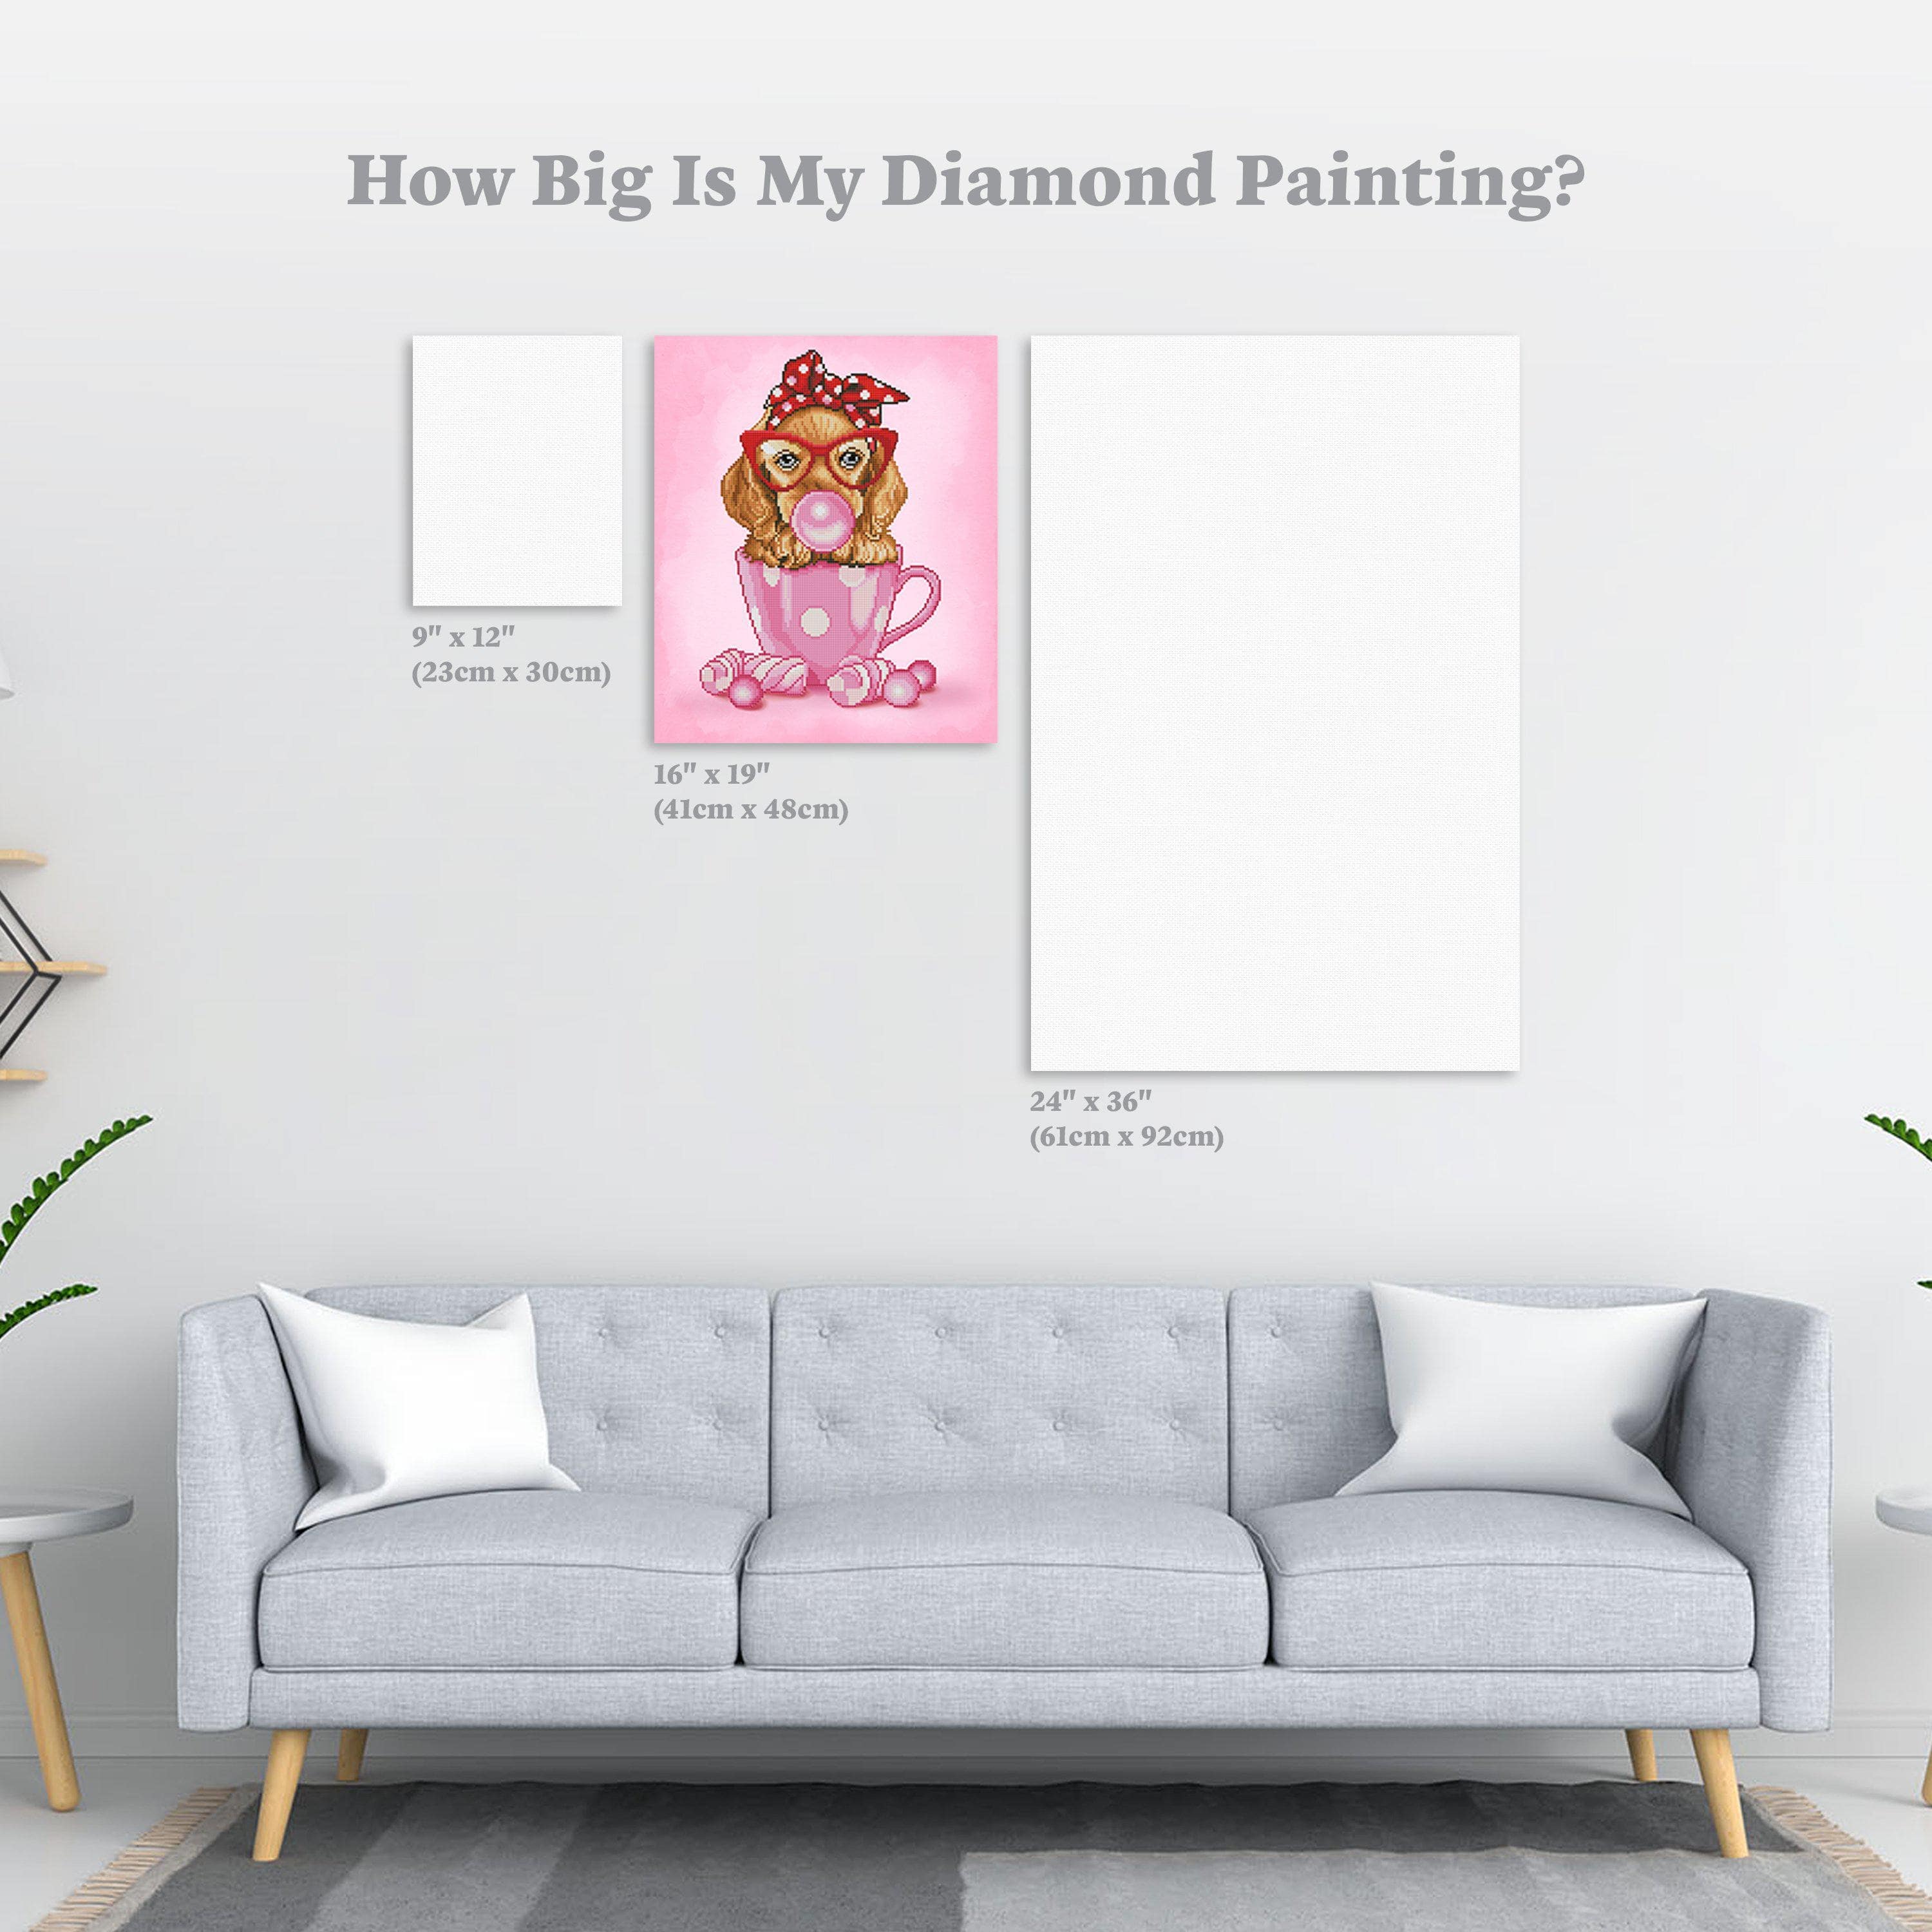 Premium AI Image  Dazzling Diamond Art Frames Adding Sparkle to Your Decor